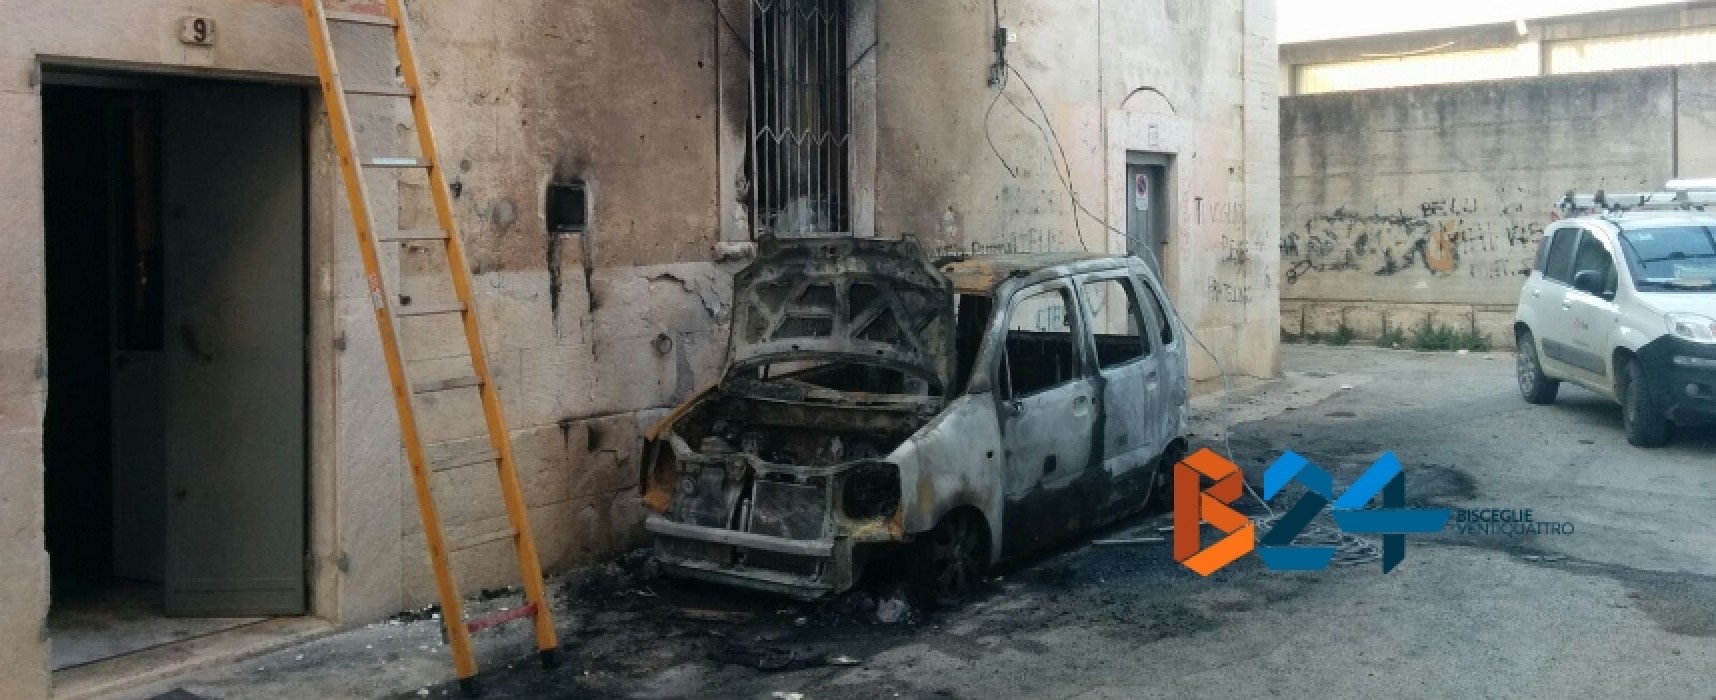 Auto prende fuoco in via Varese alle prime luci dell’alba, danneggiata palazzina / FOTO